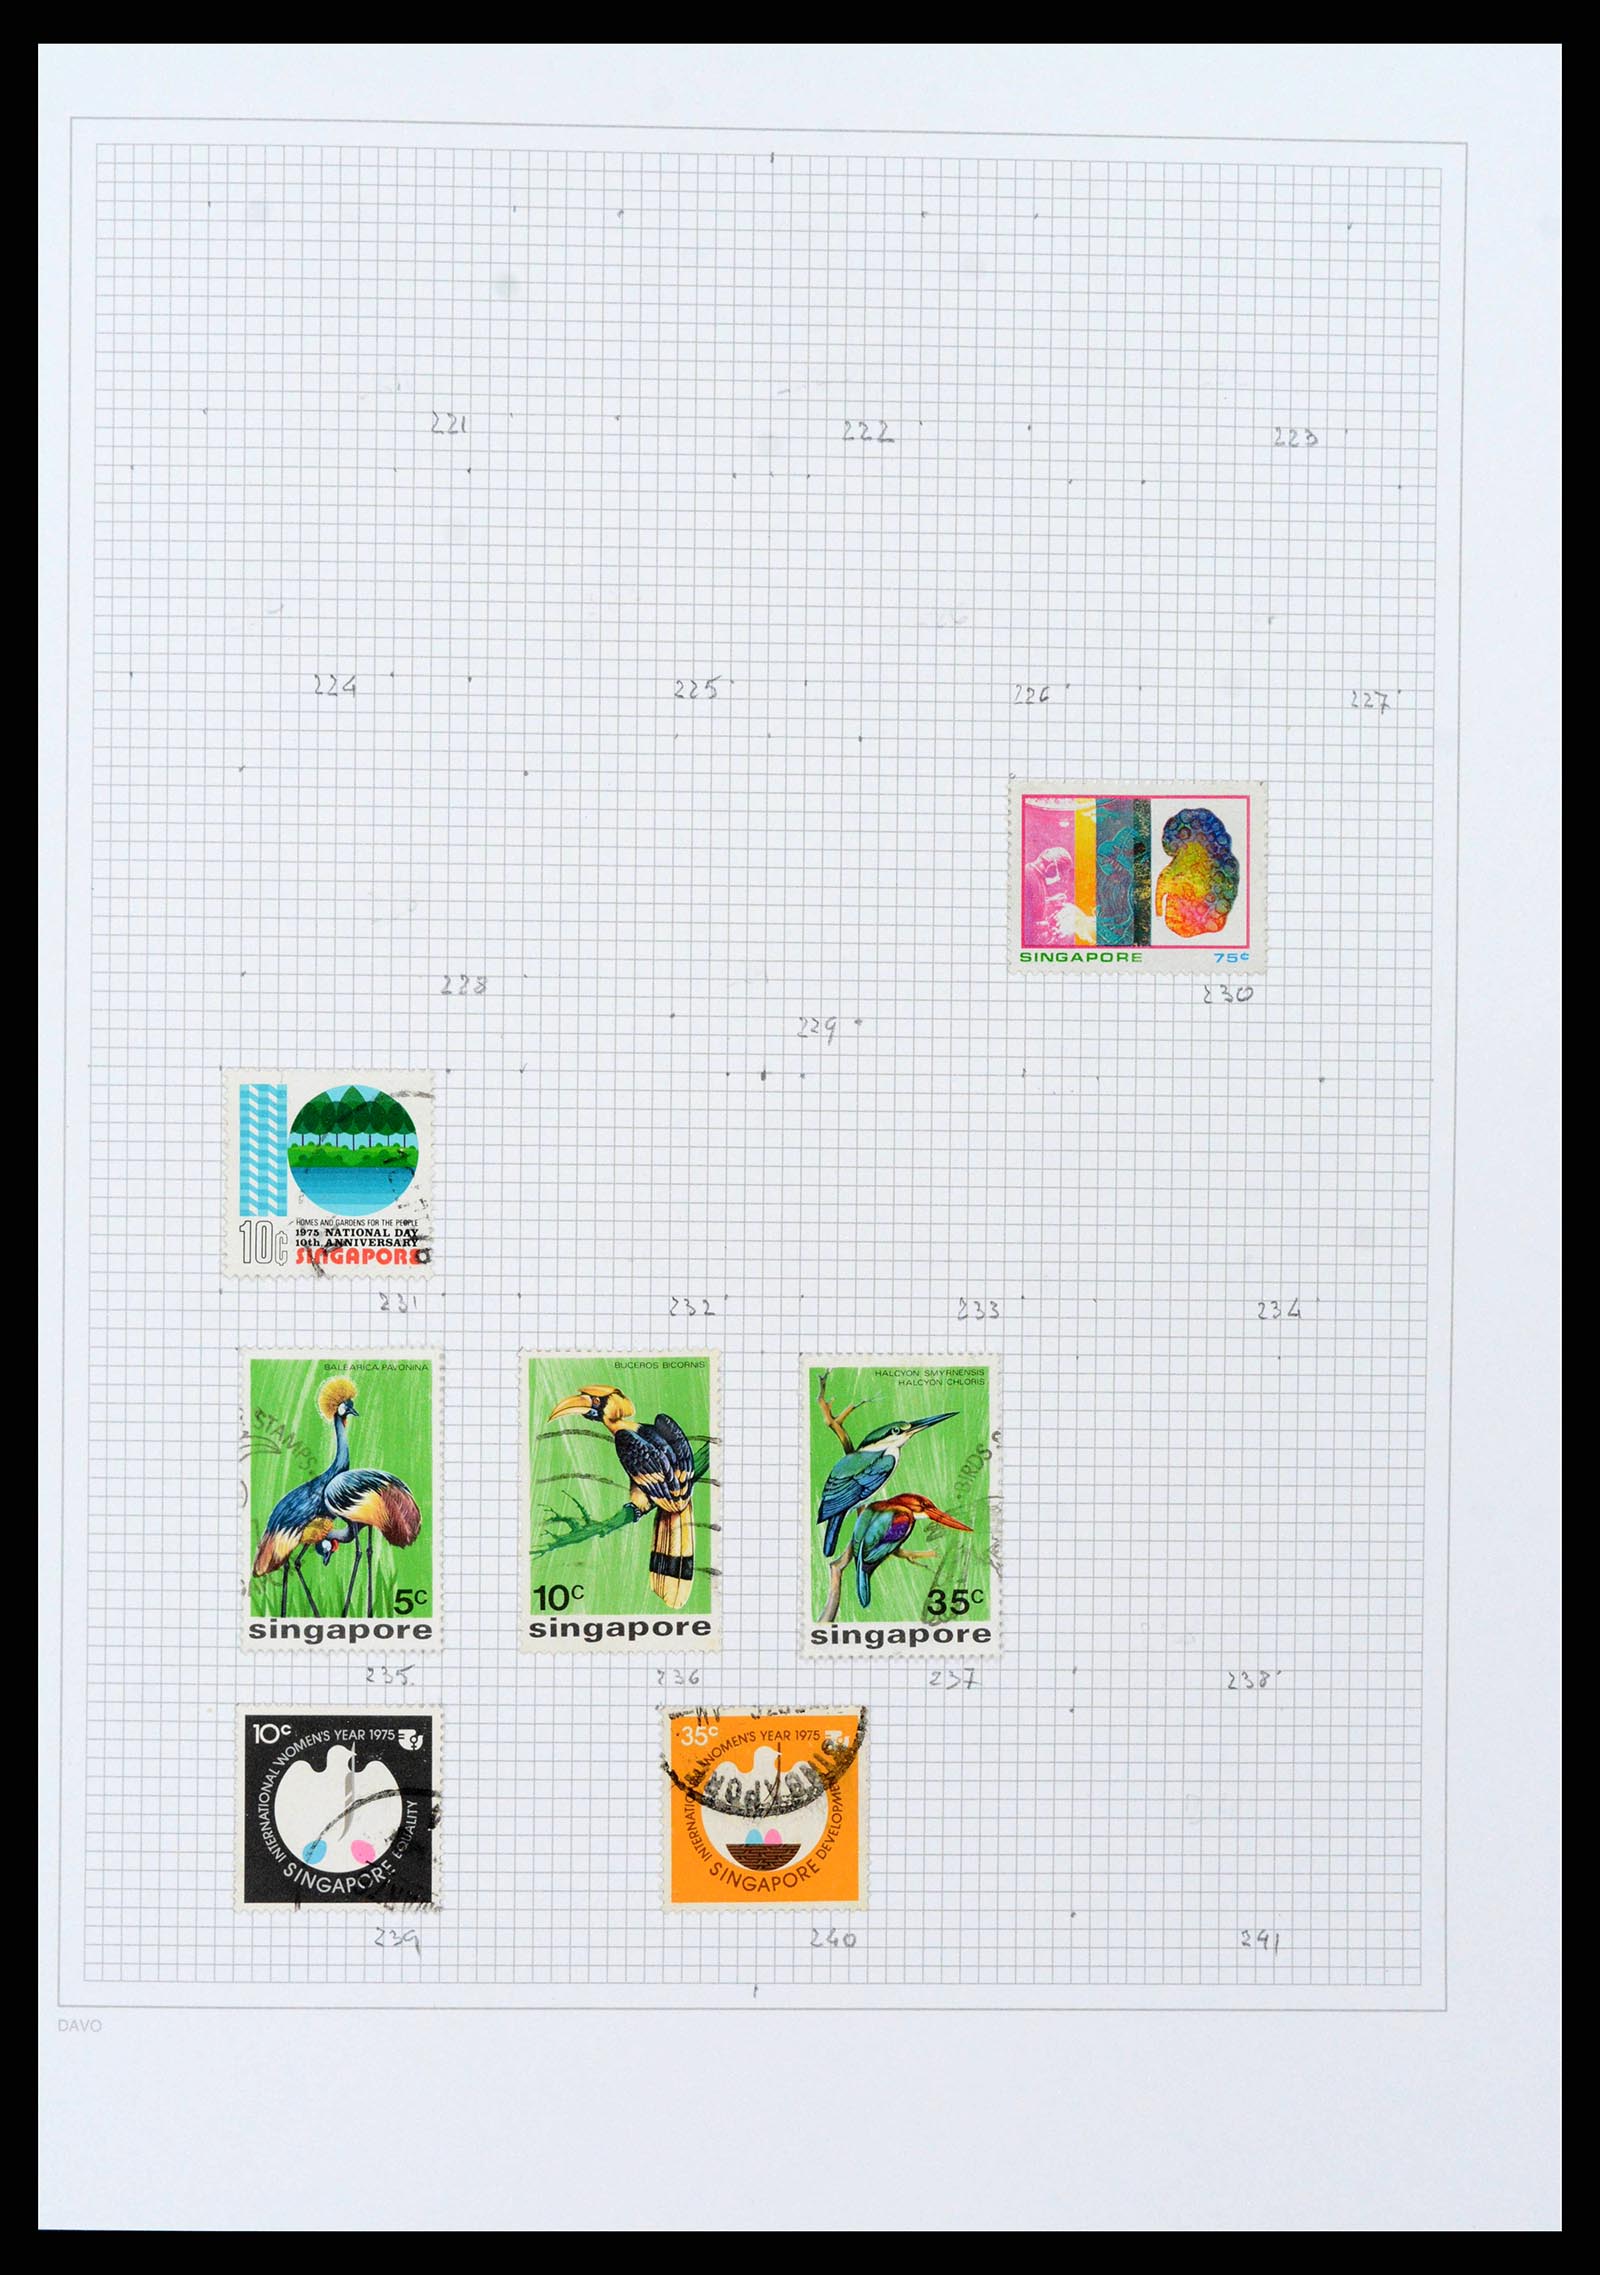 38158 0047 - Stamp collection 38158 Hong Kong 1862-1997.